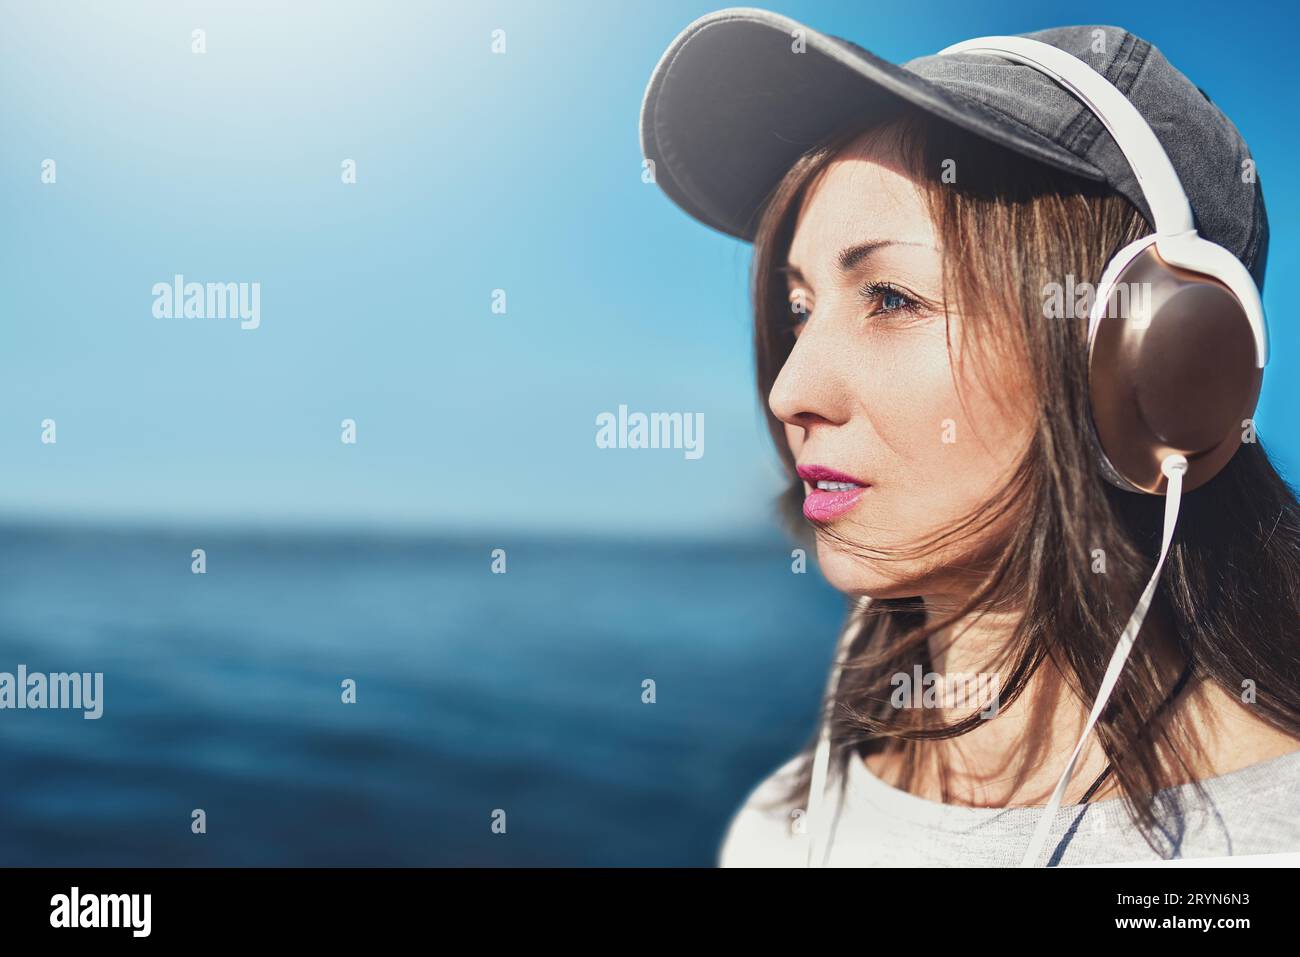 Ritratto ravvicinato di una donna con occhiali da sole che indossa un berretto che ama la musica sullo sfondo del mare. Concetto di musica. Foto Stock